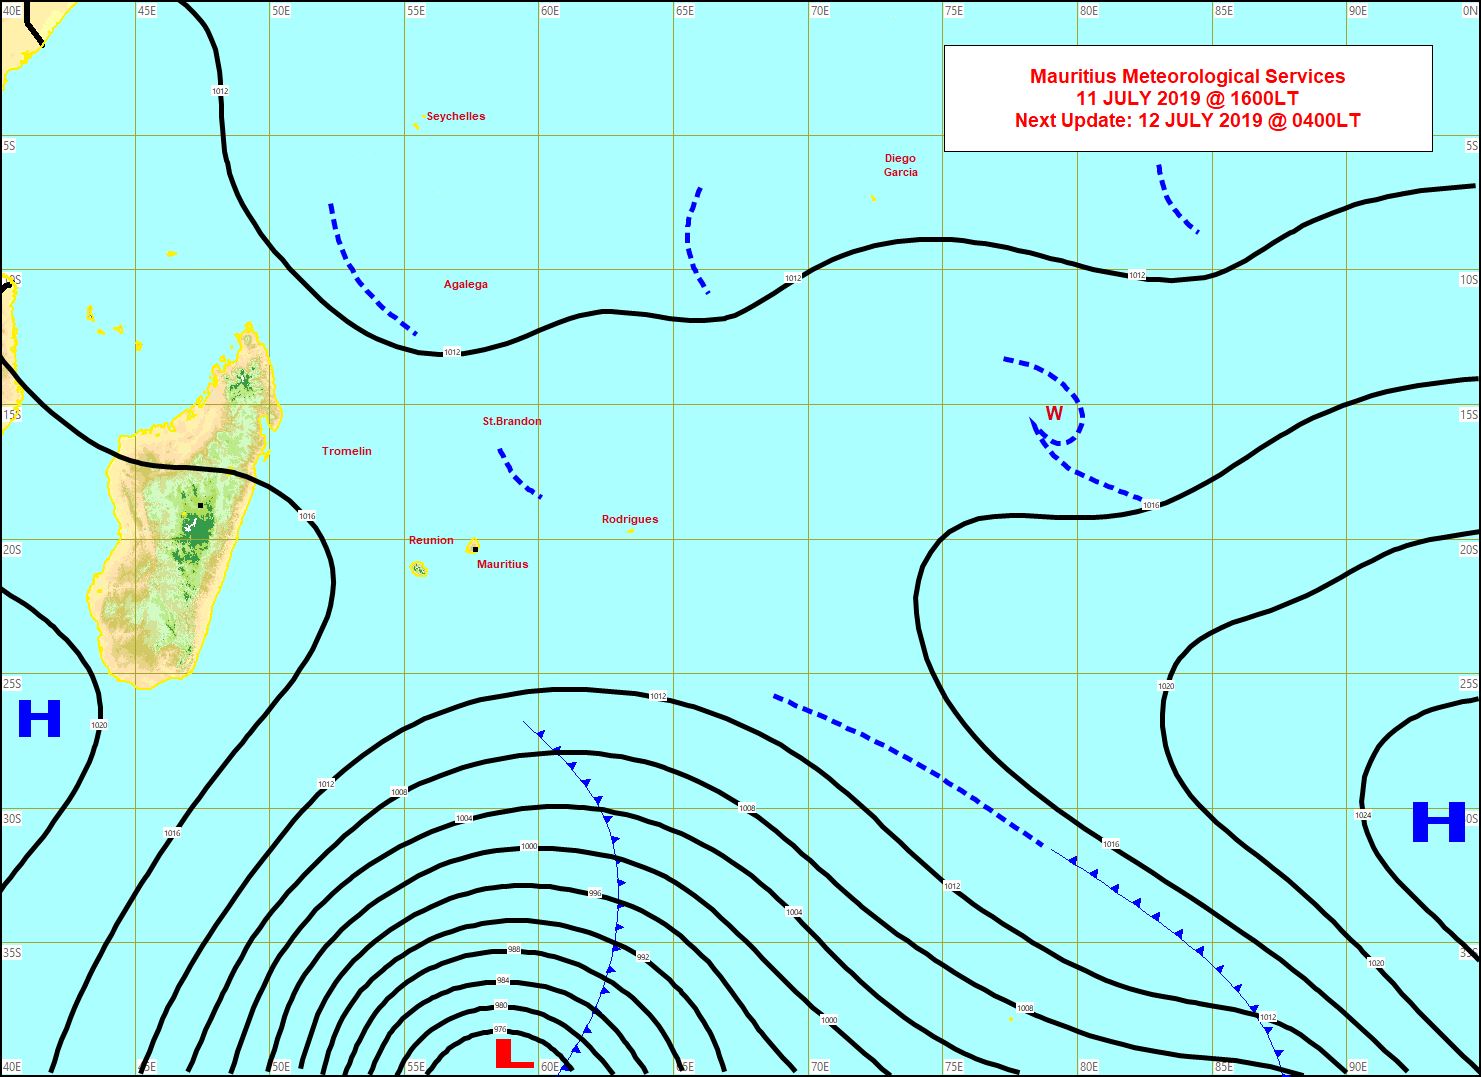 Analyse de la situation de surface cet après midi. Une tempête extra-tropicale(968hpa) évolue à un peu plus de 2000km au Sud des Iles Soeurs. MMS